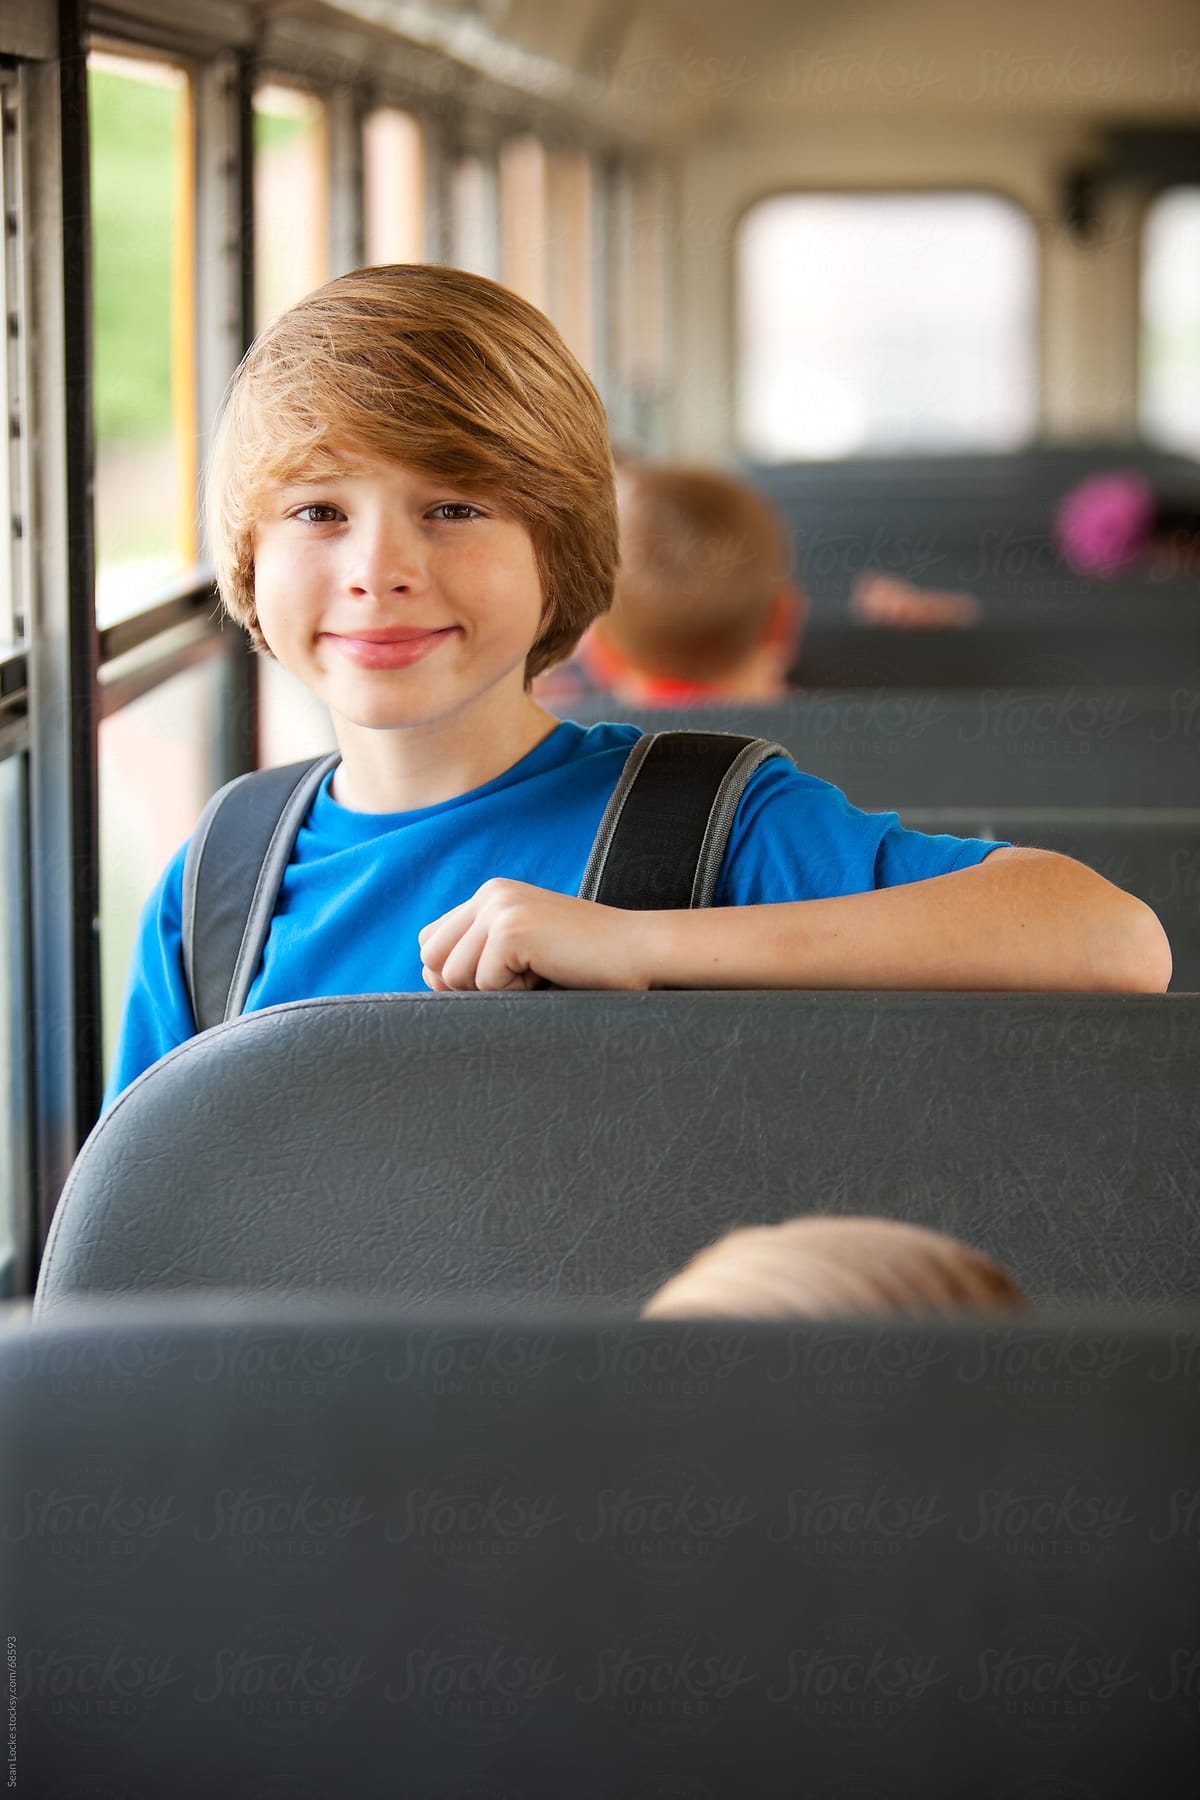 School Bus: Handsome Schoolboy on the Ride to School